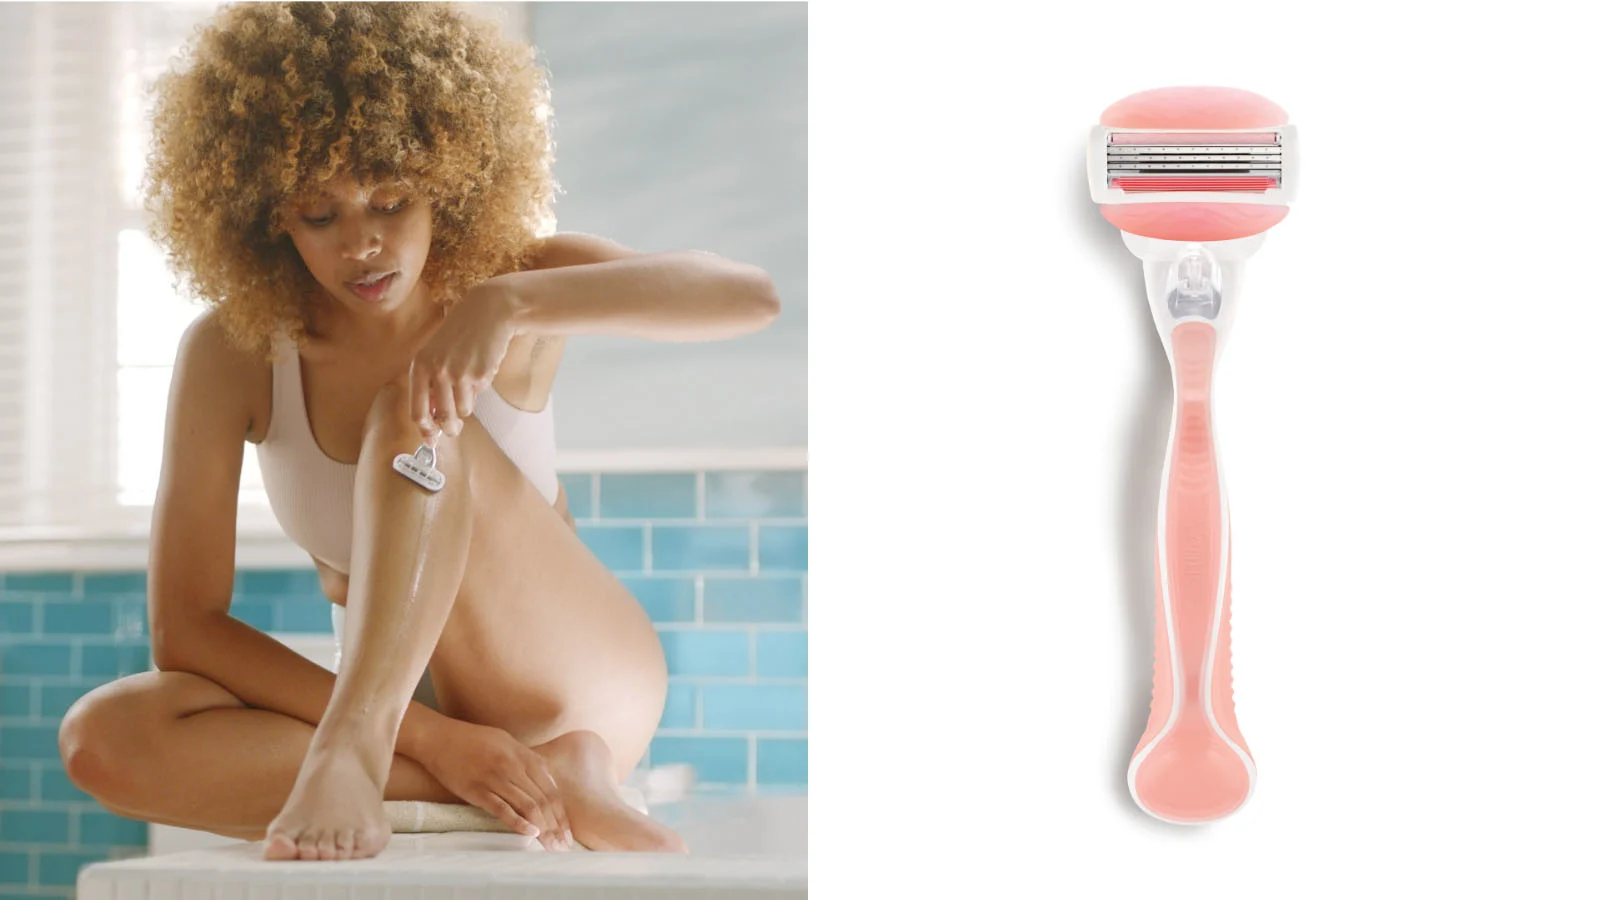 Woman Shaving Her Legs and Venus Women’s Razor